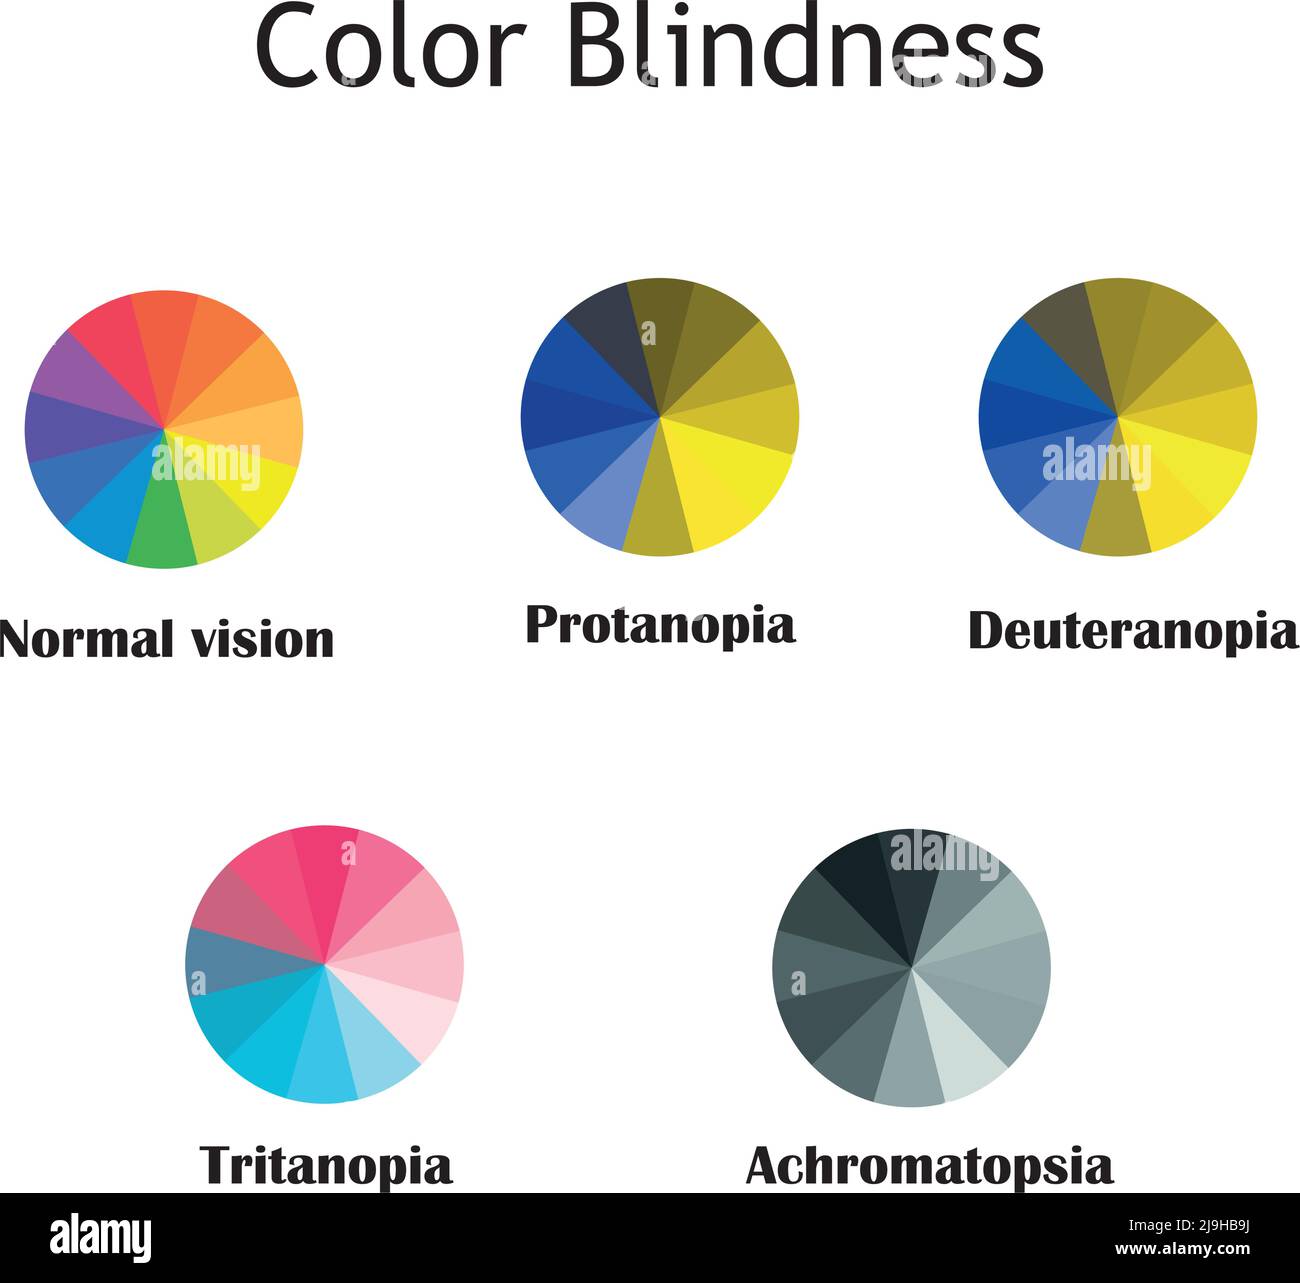 color blindness comparison pictures